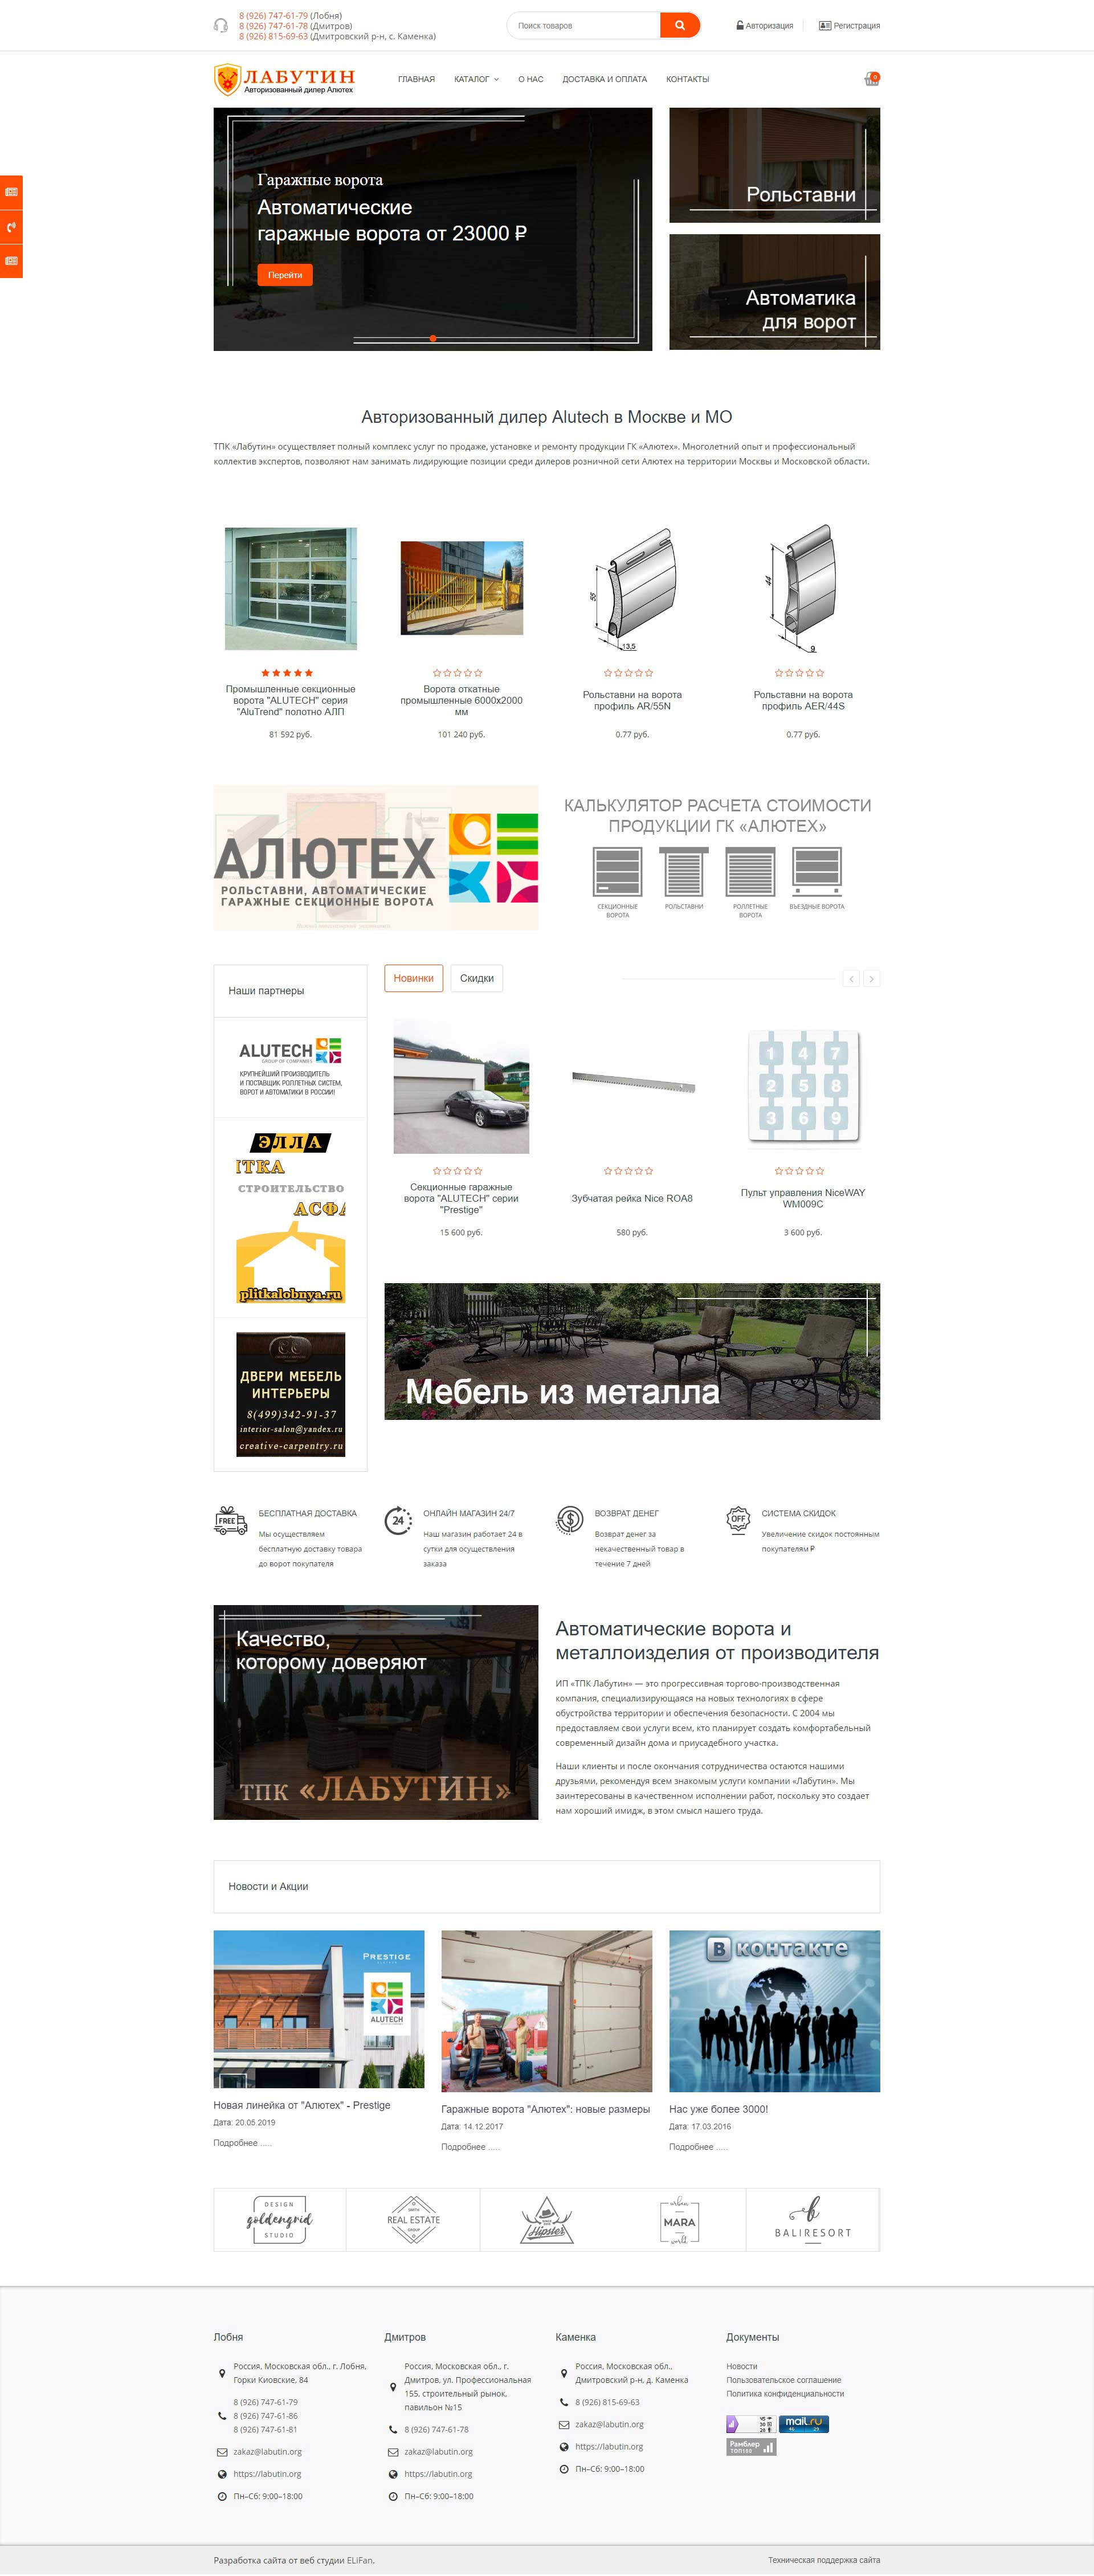 Реклама в интернете и создание сайтов Симферополь | BLACKMEDIA